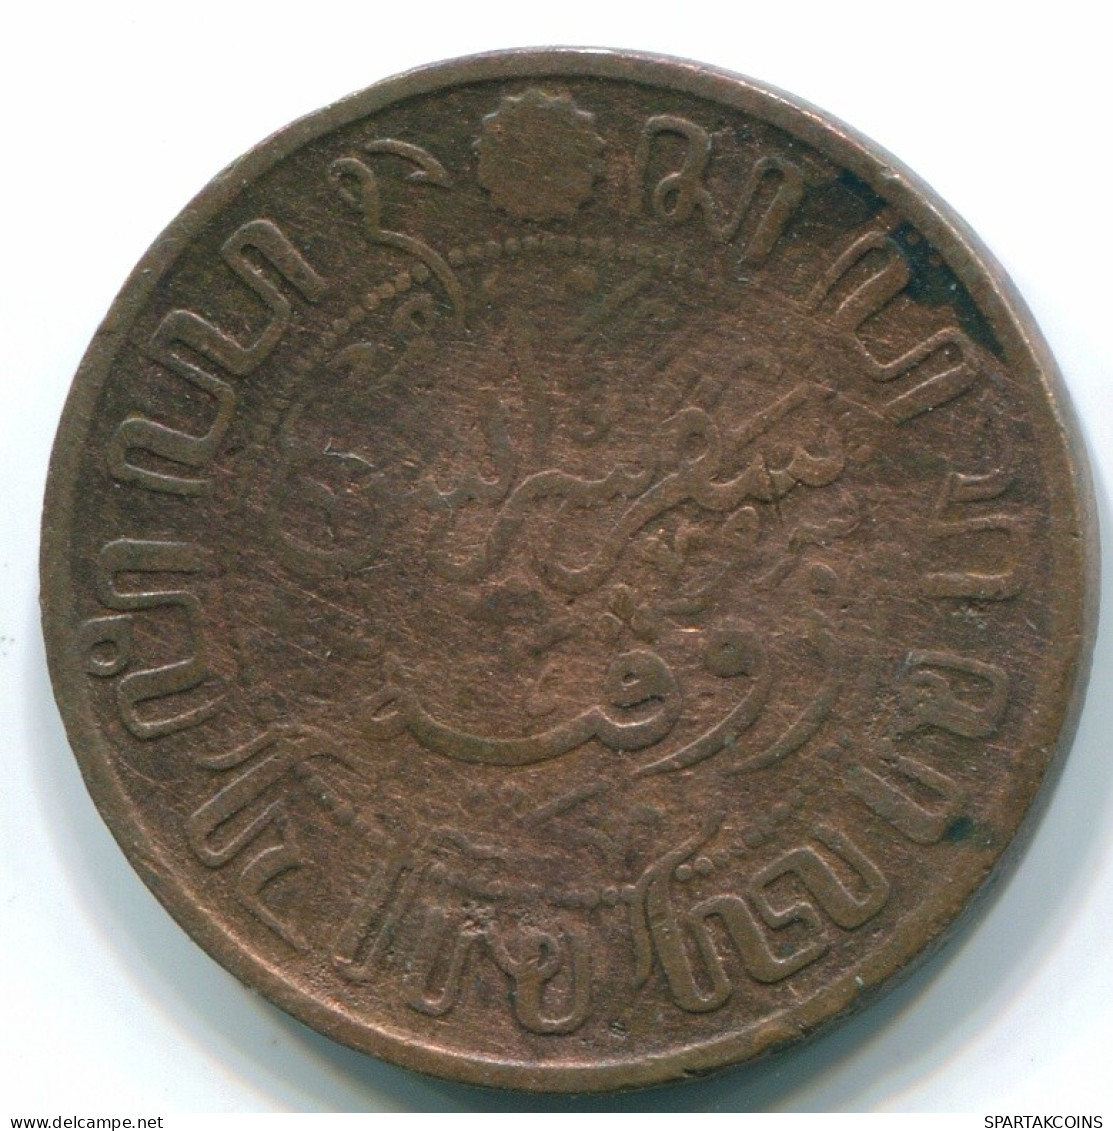 1 CENT 1914 NIEDERLANDE OSTINDIEN INDONESISCH Copper Koloniale Münze #S10077.D.A - Nederlands-Indië